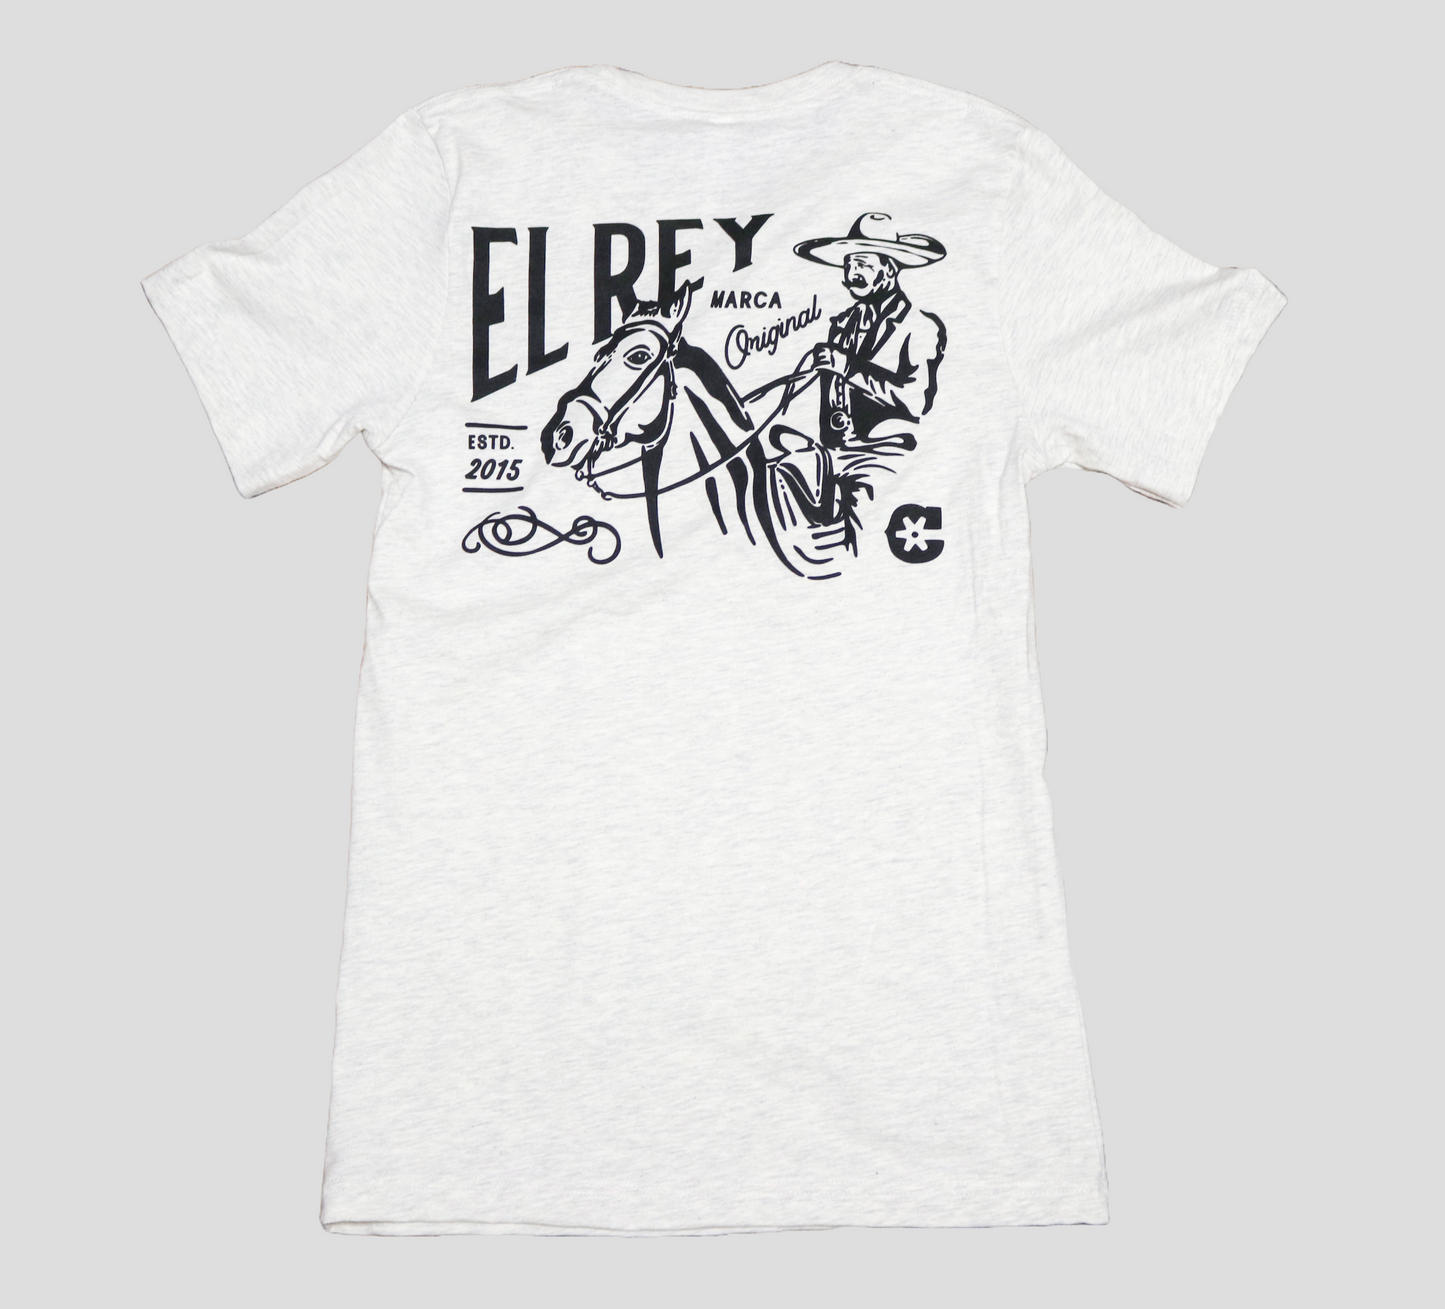 XL Oatmeal Original "El Rey" Playera T-Shirt